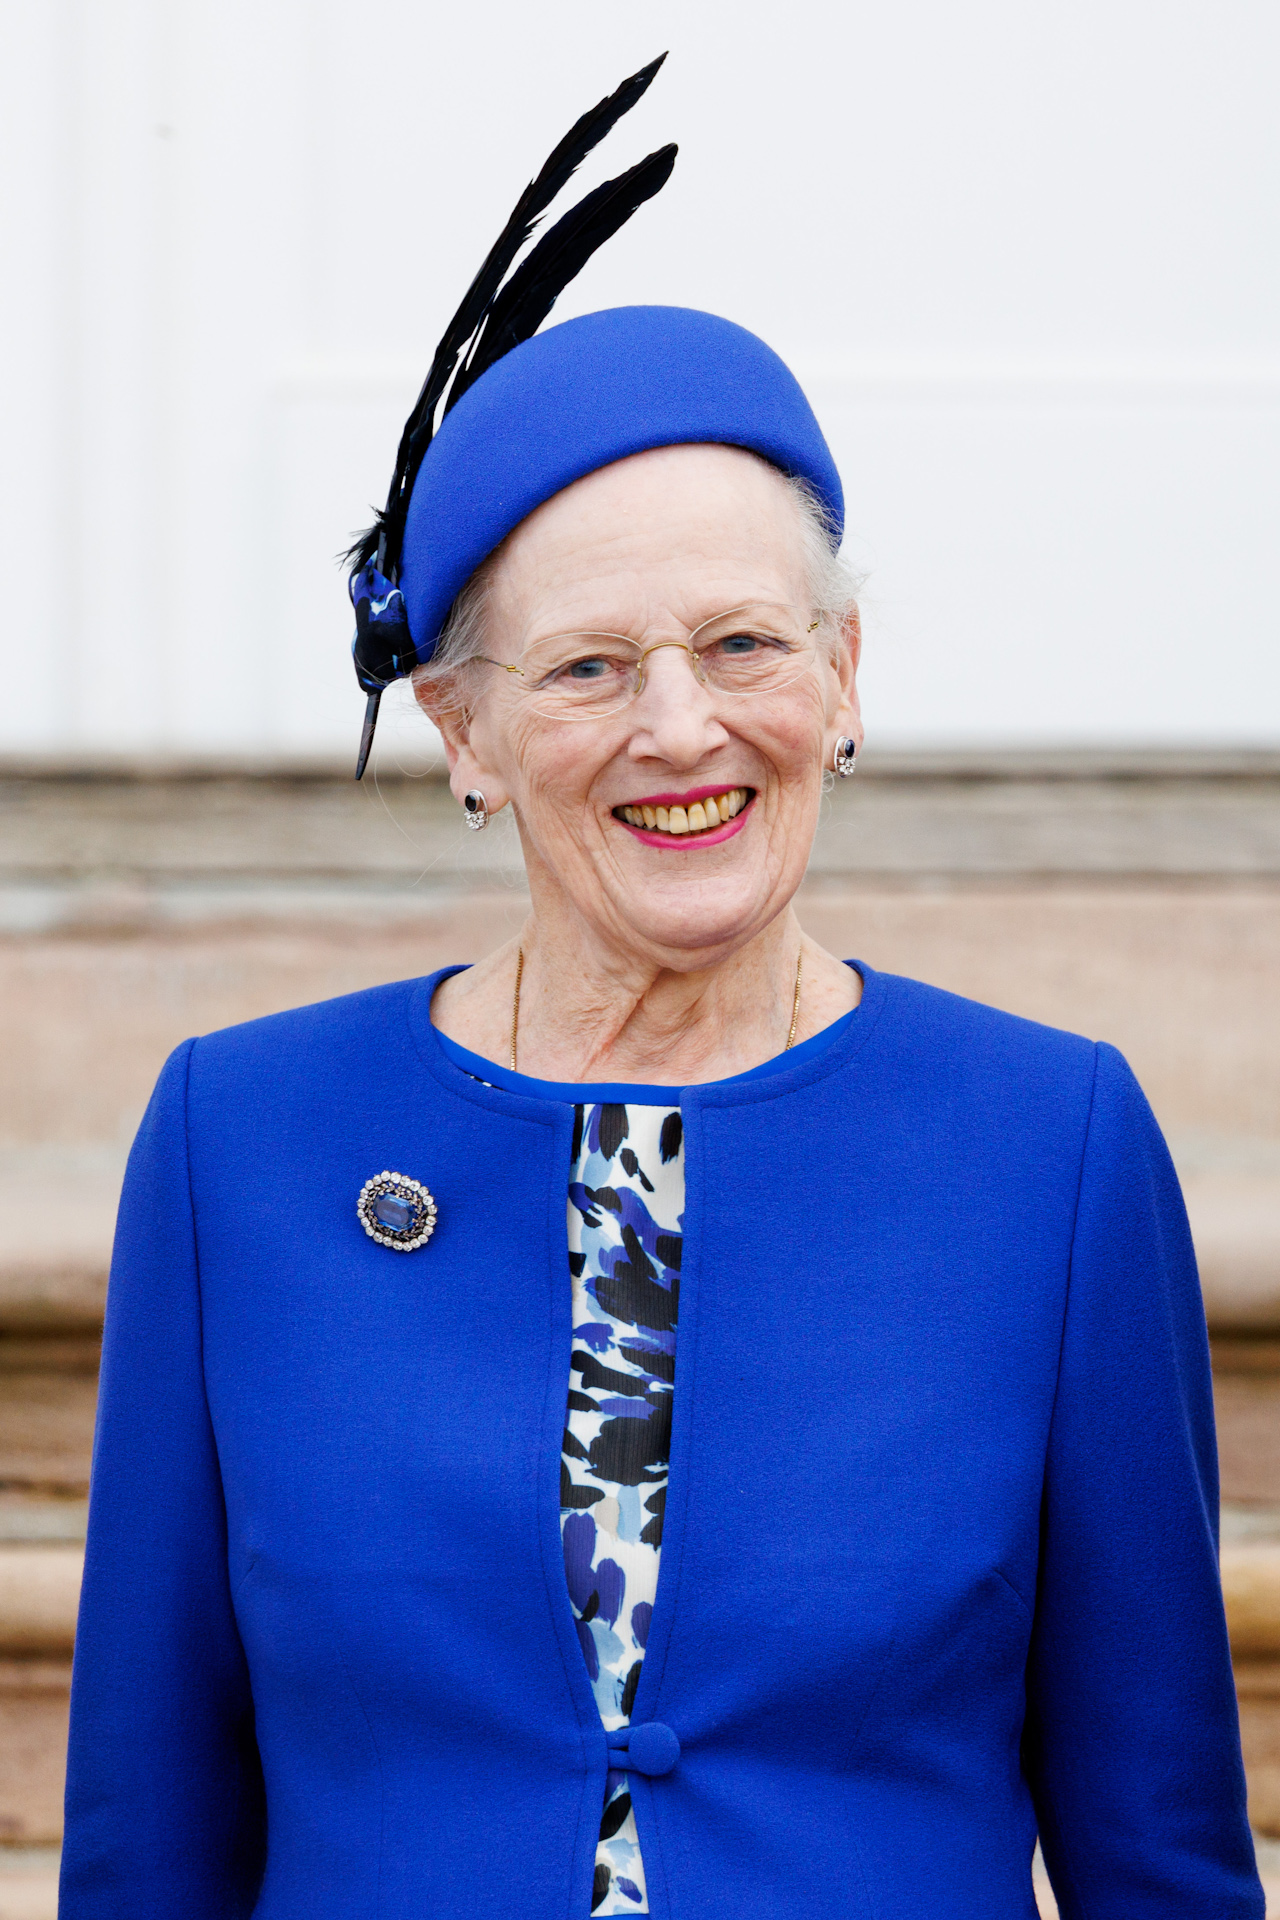 <p>Las mejores fotos de la Reina Margrethe II<br>  </p>